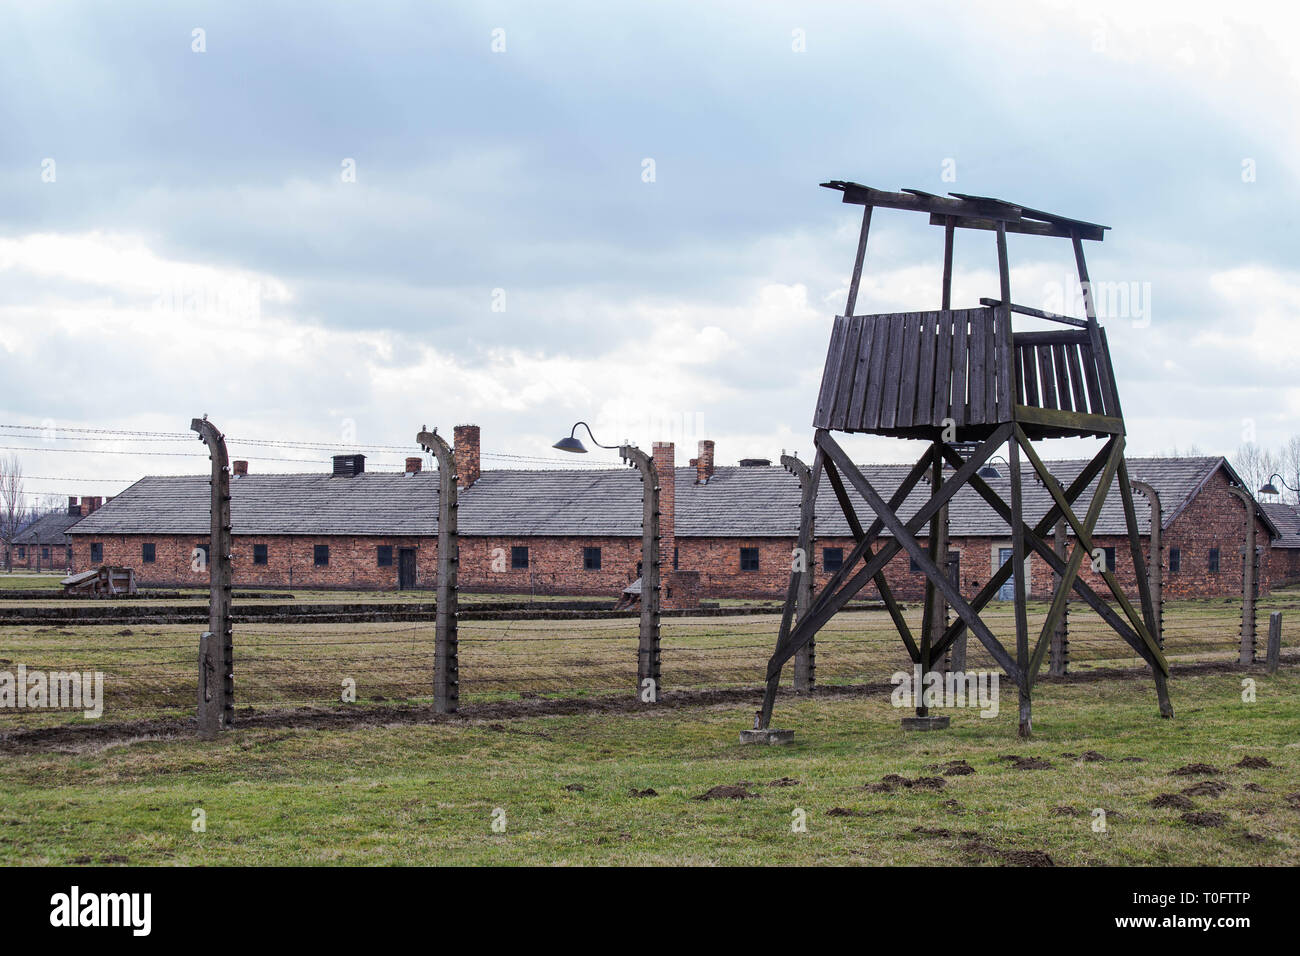 A watchtower in concentration camp Auschwitz Birkenau Polen, March 12, 2019 Stock Photo